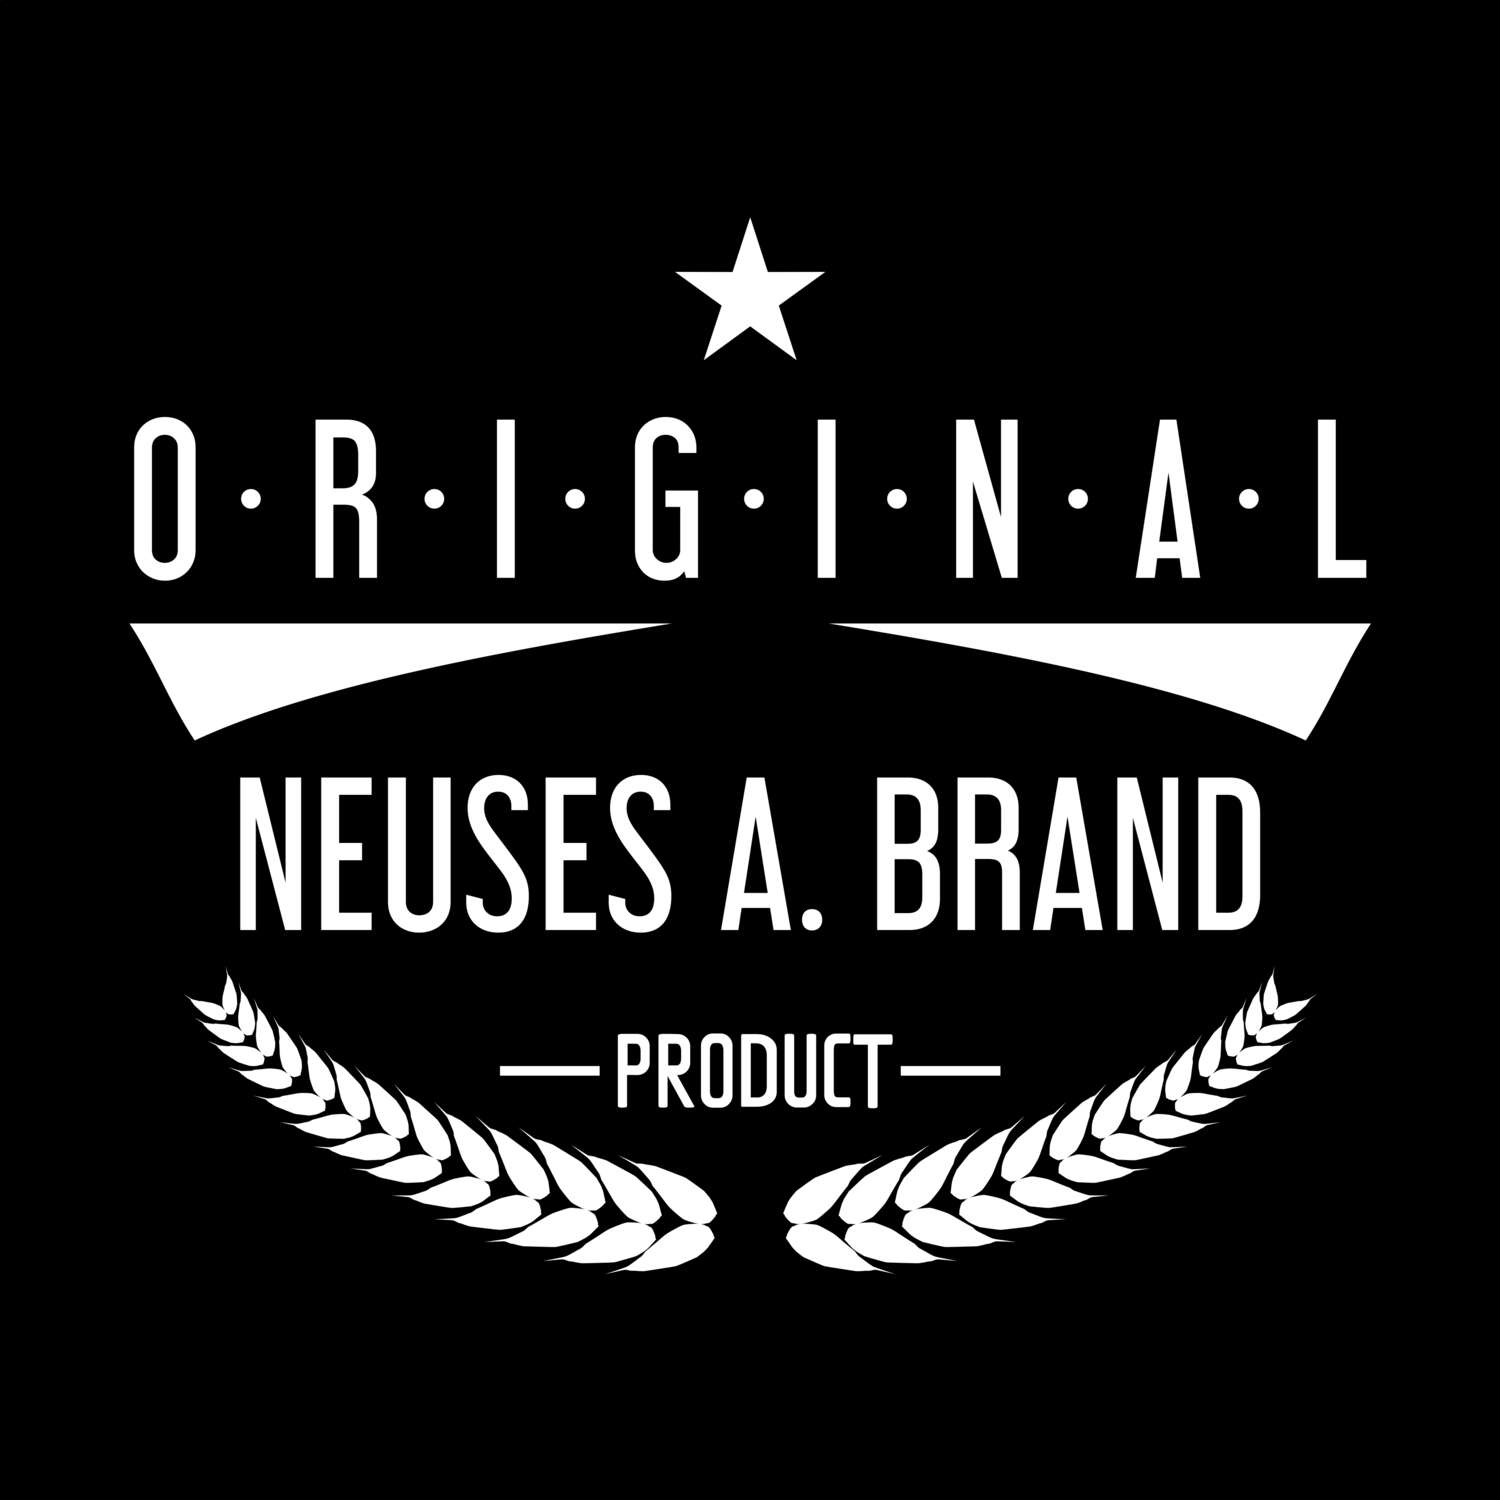 Neuses a. Brand T-Shirt »Original Product«